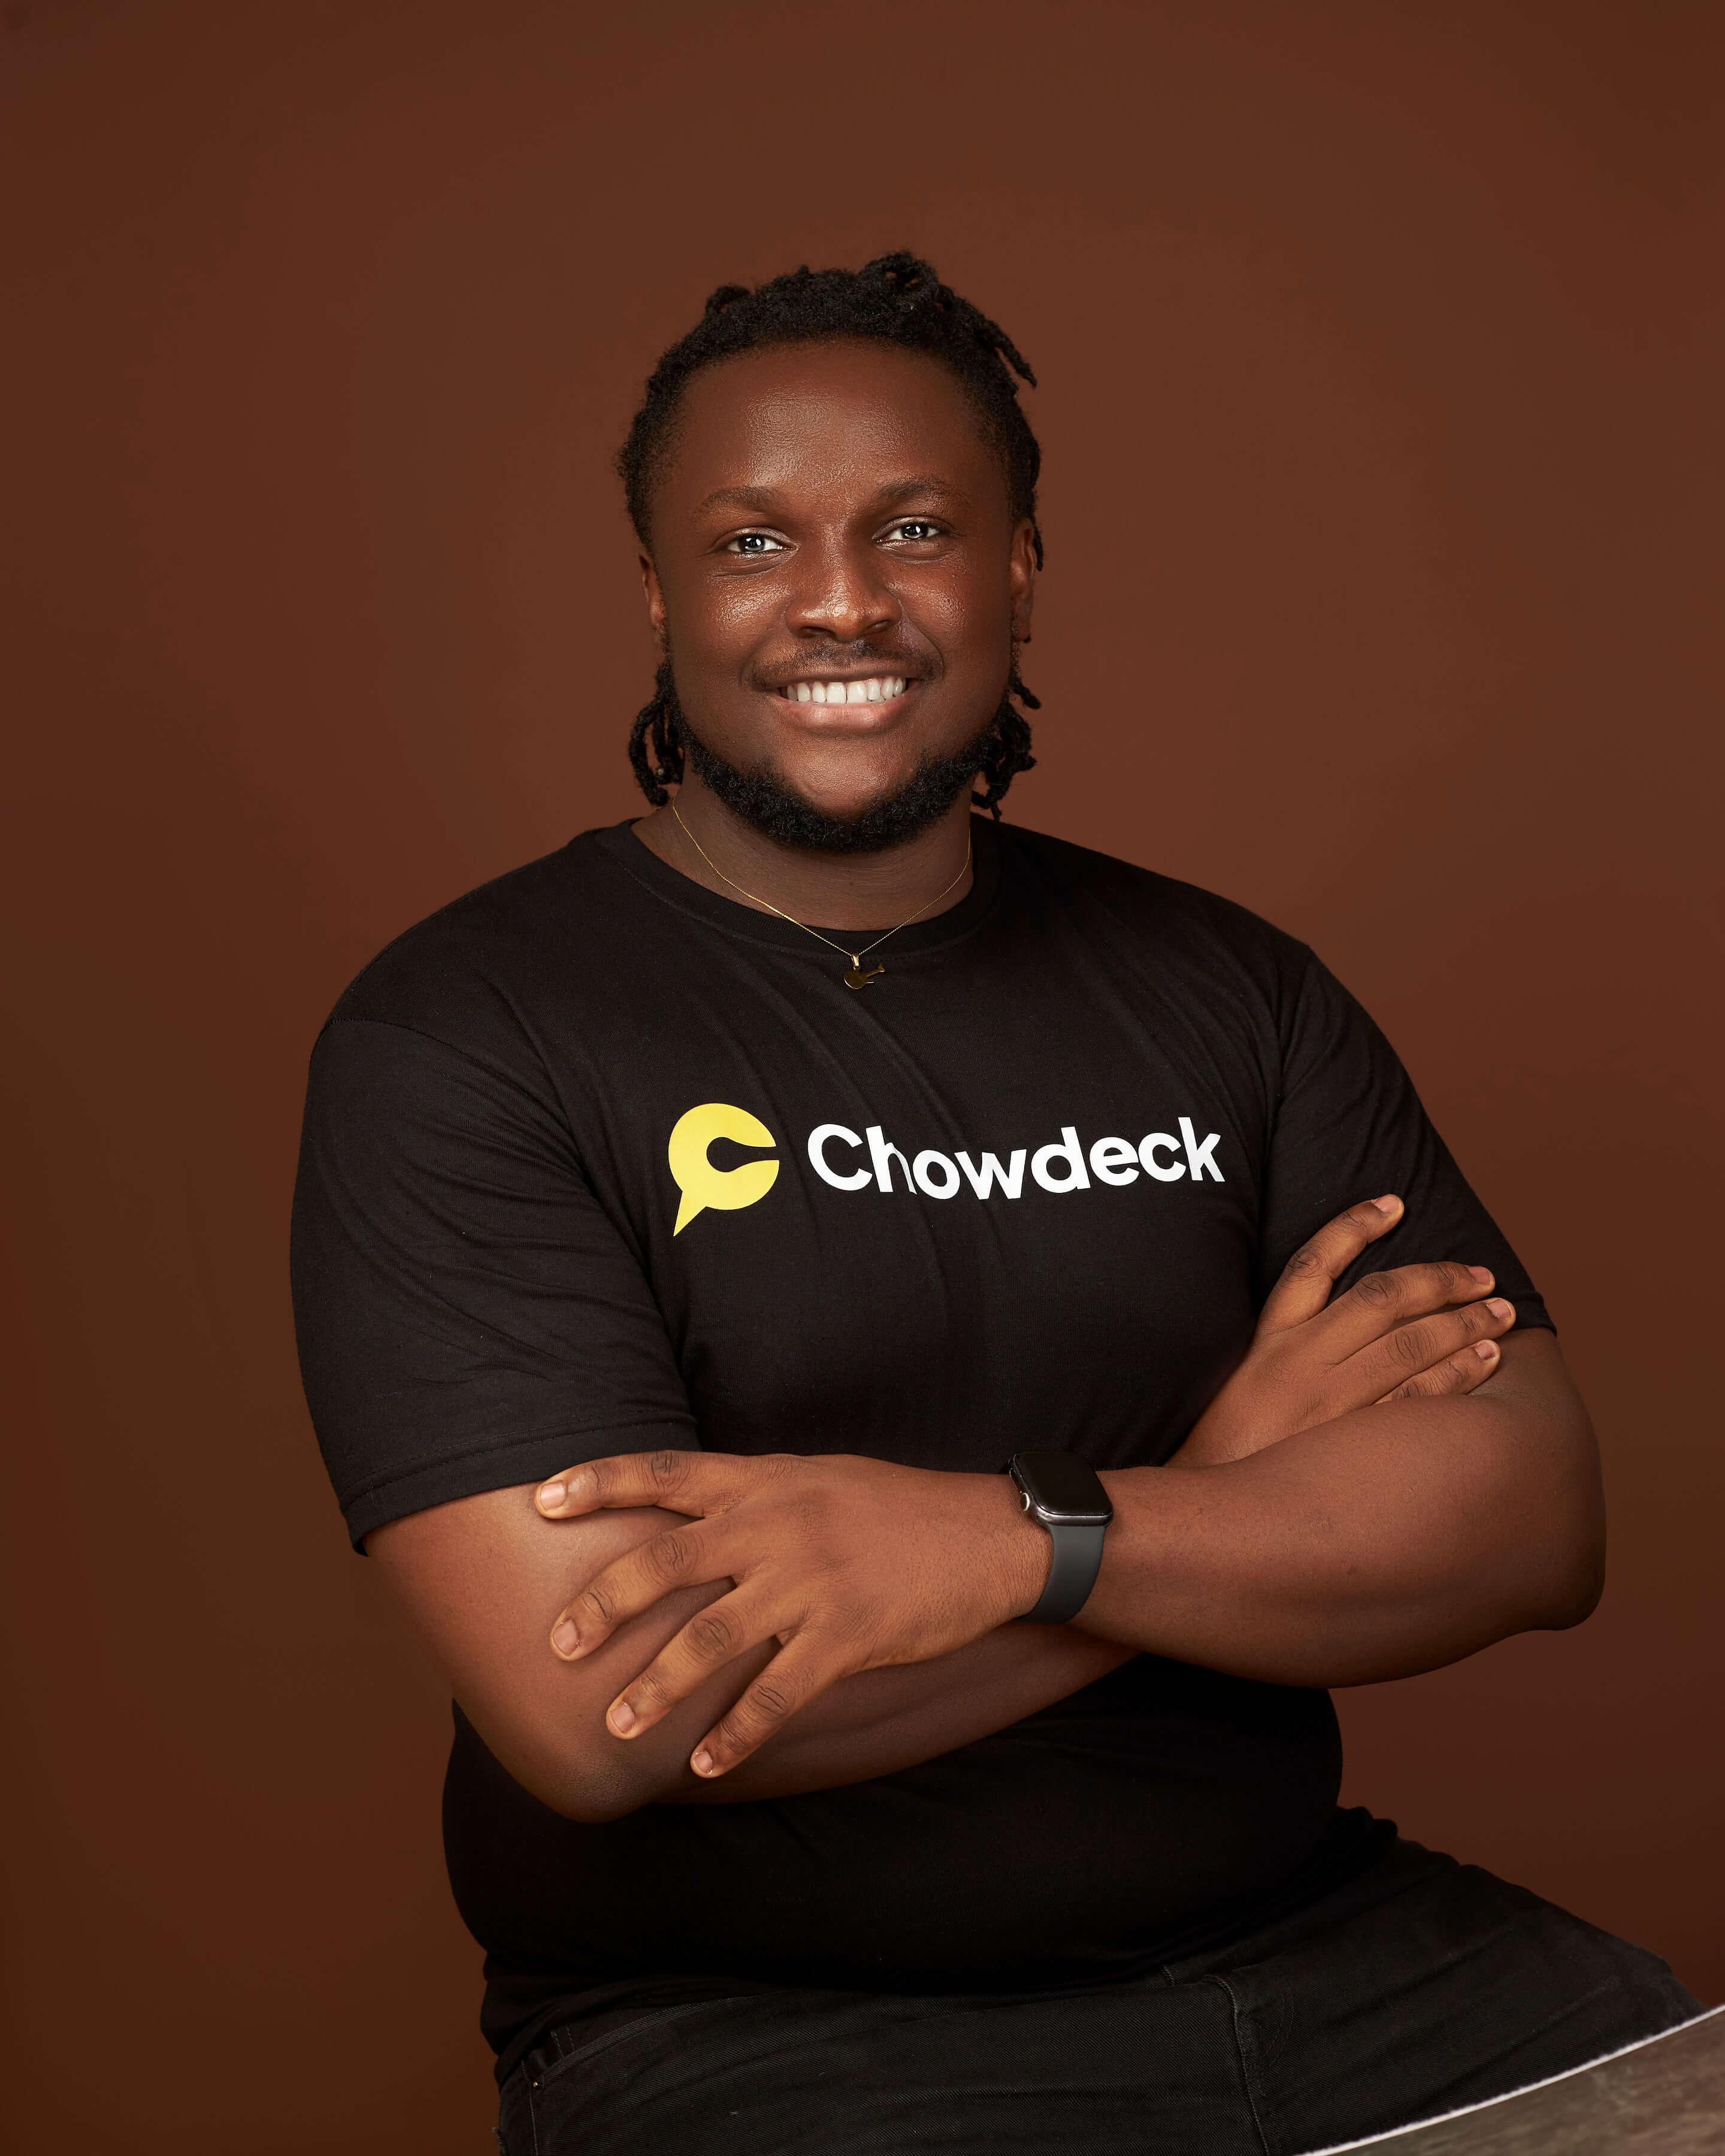 Chowdeck founder